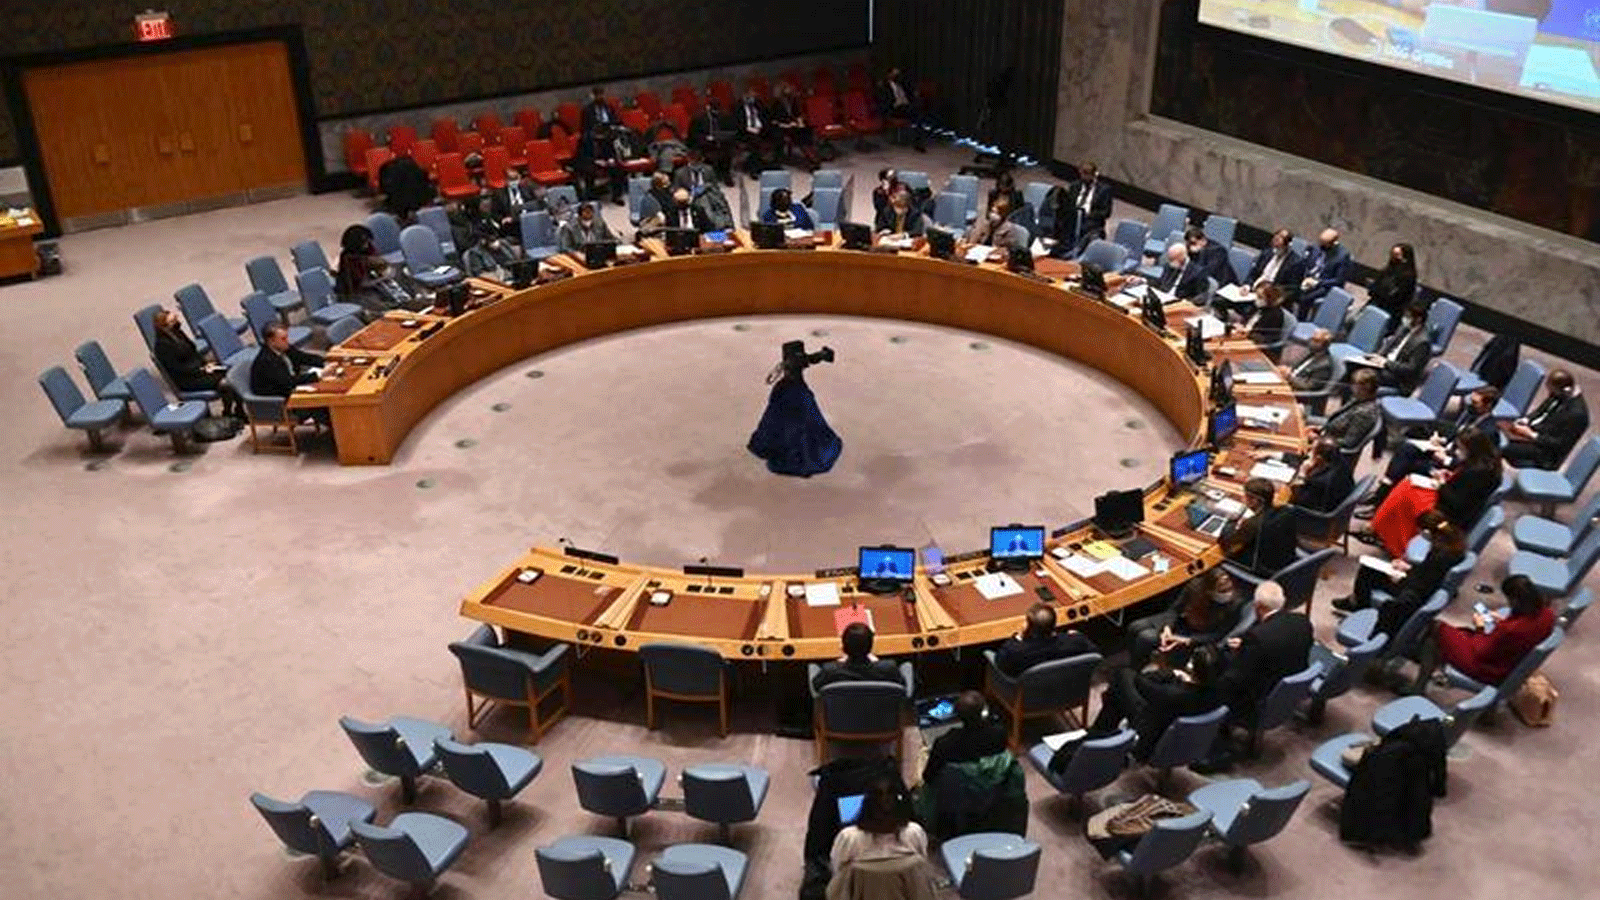 لقطة من اجتماع مجلس الأمن التابع للأمم المتحدة في مقر الأمم المتحدة في مدينة نيويورك، 28 شباط\ فبراير 2022.